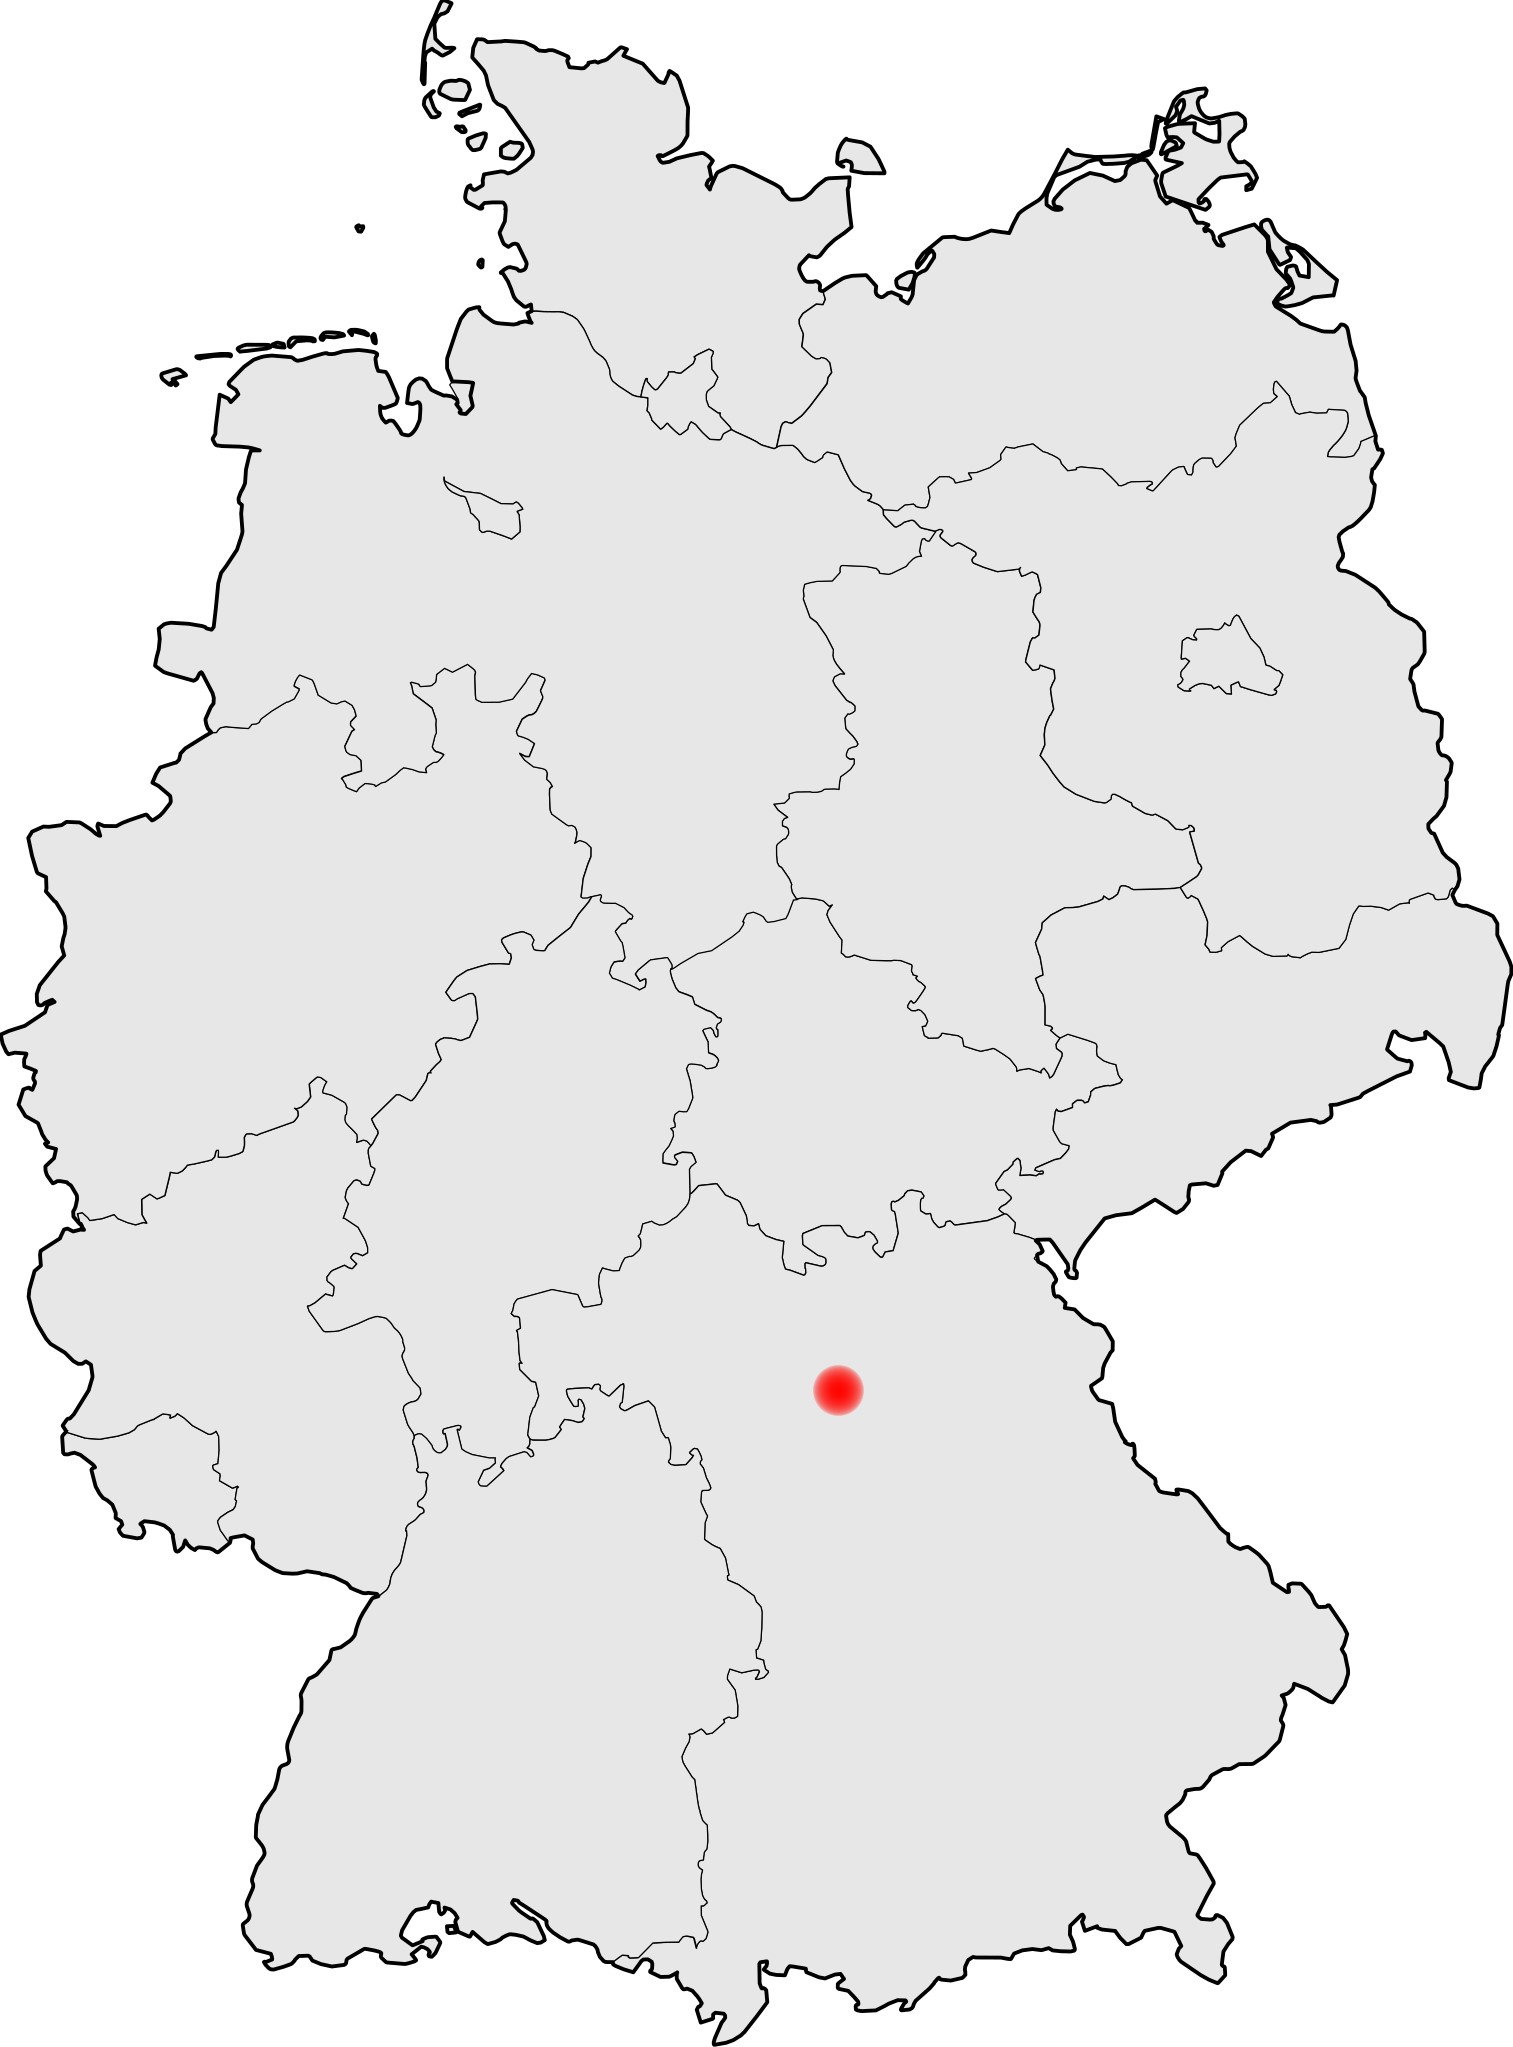 Höchstadt